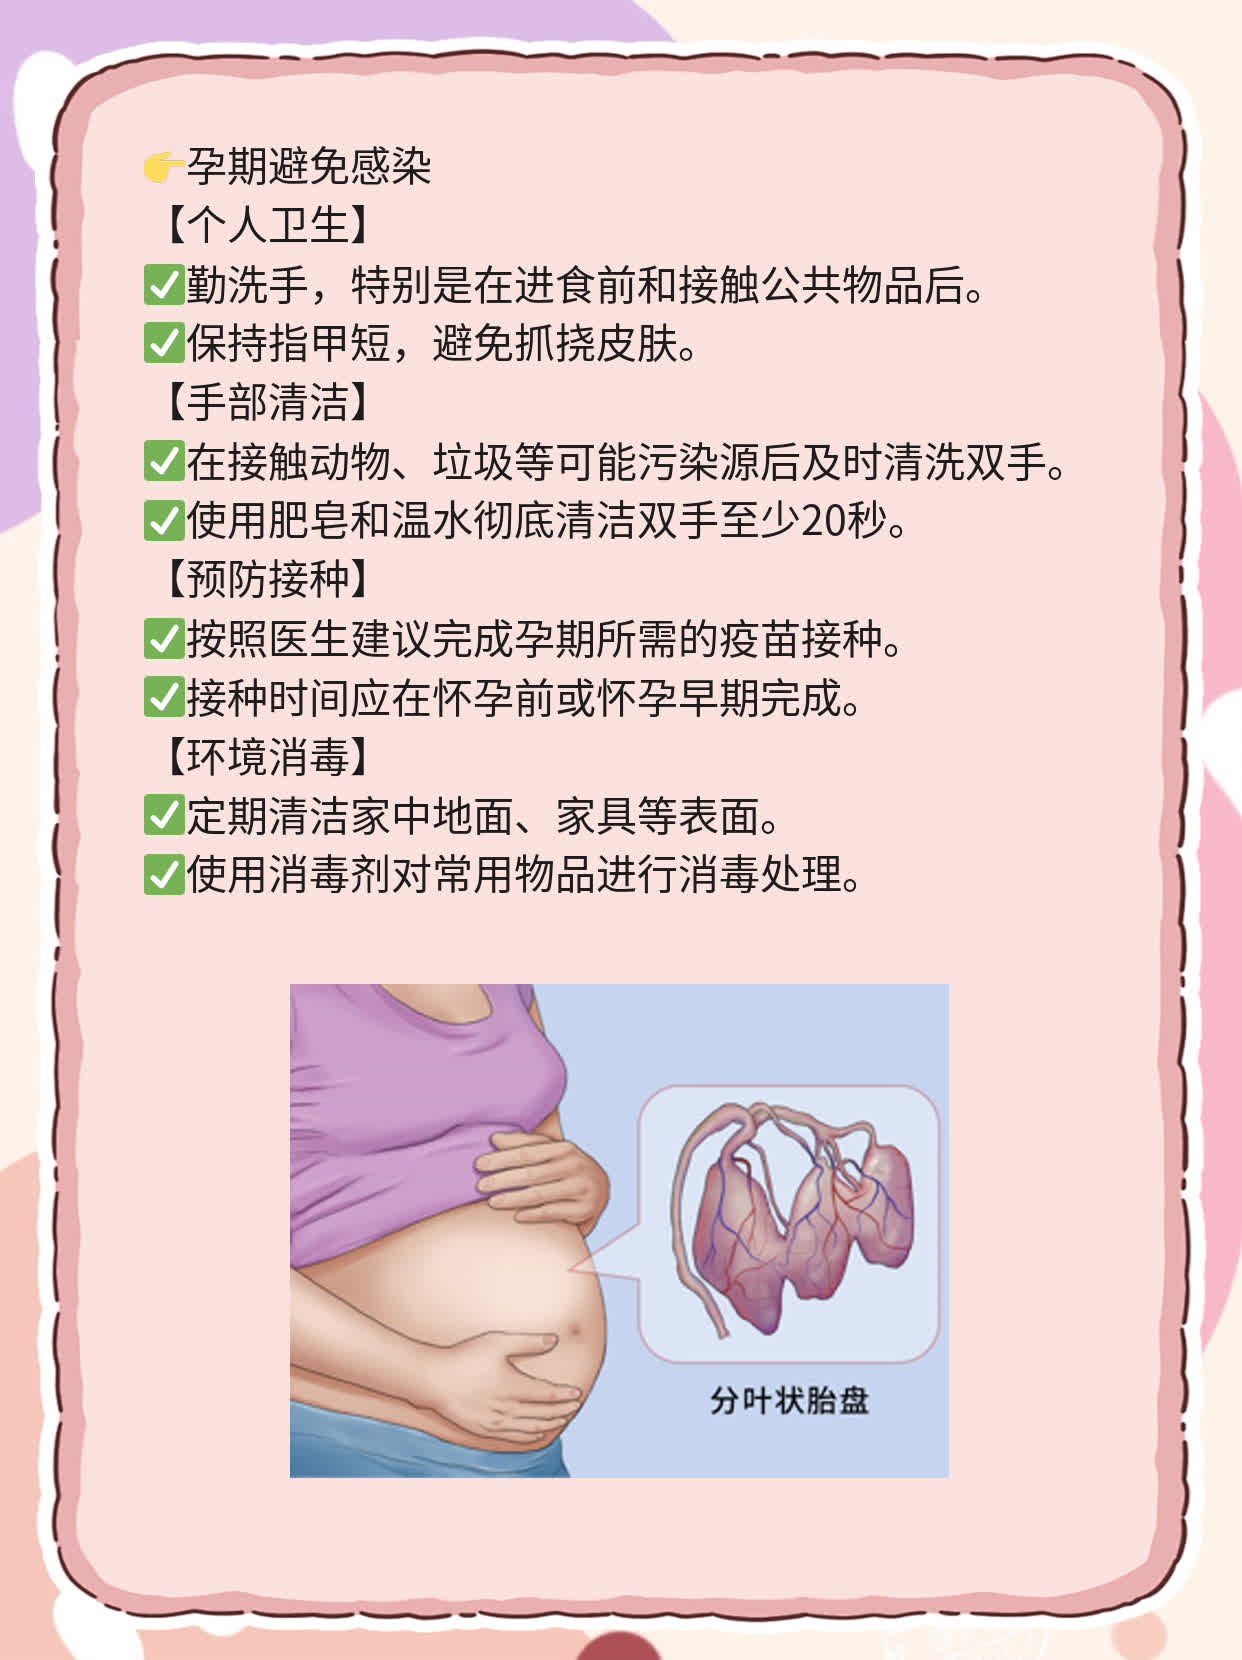 「孕期指南」4月孕期须知&食谱黑名单